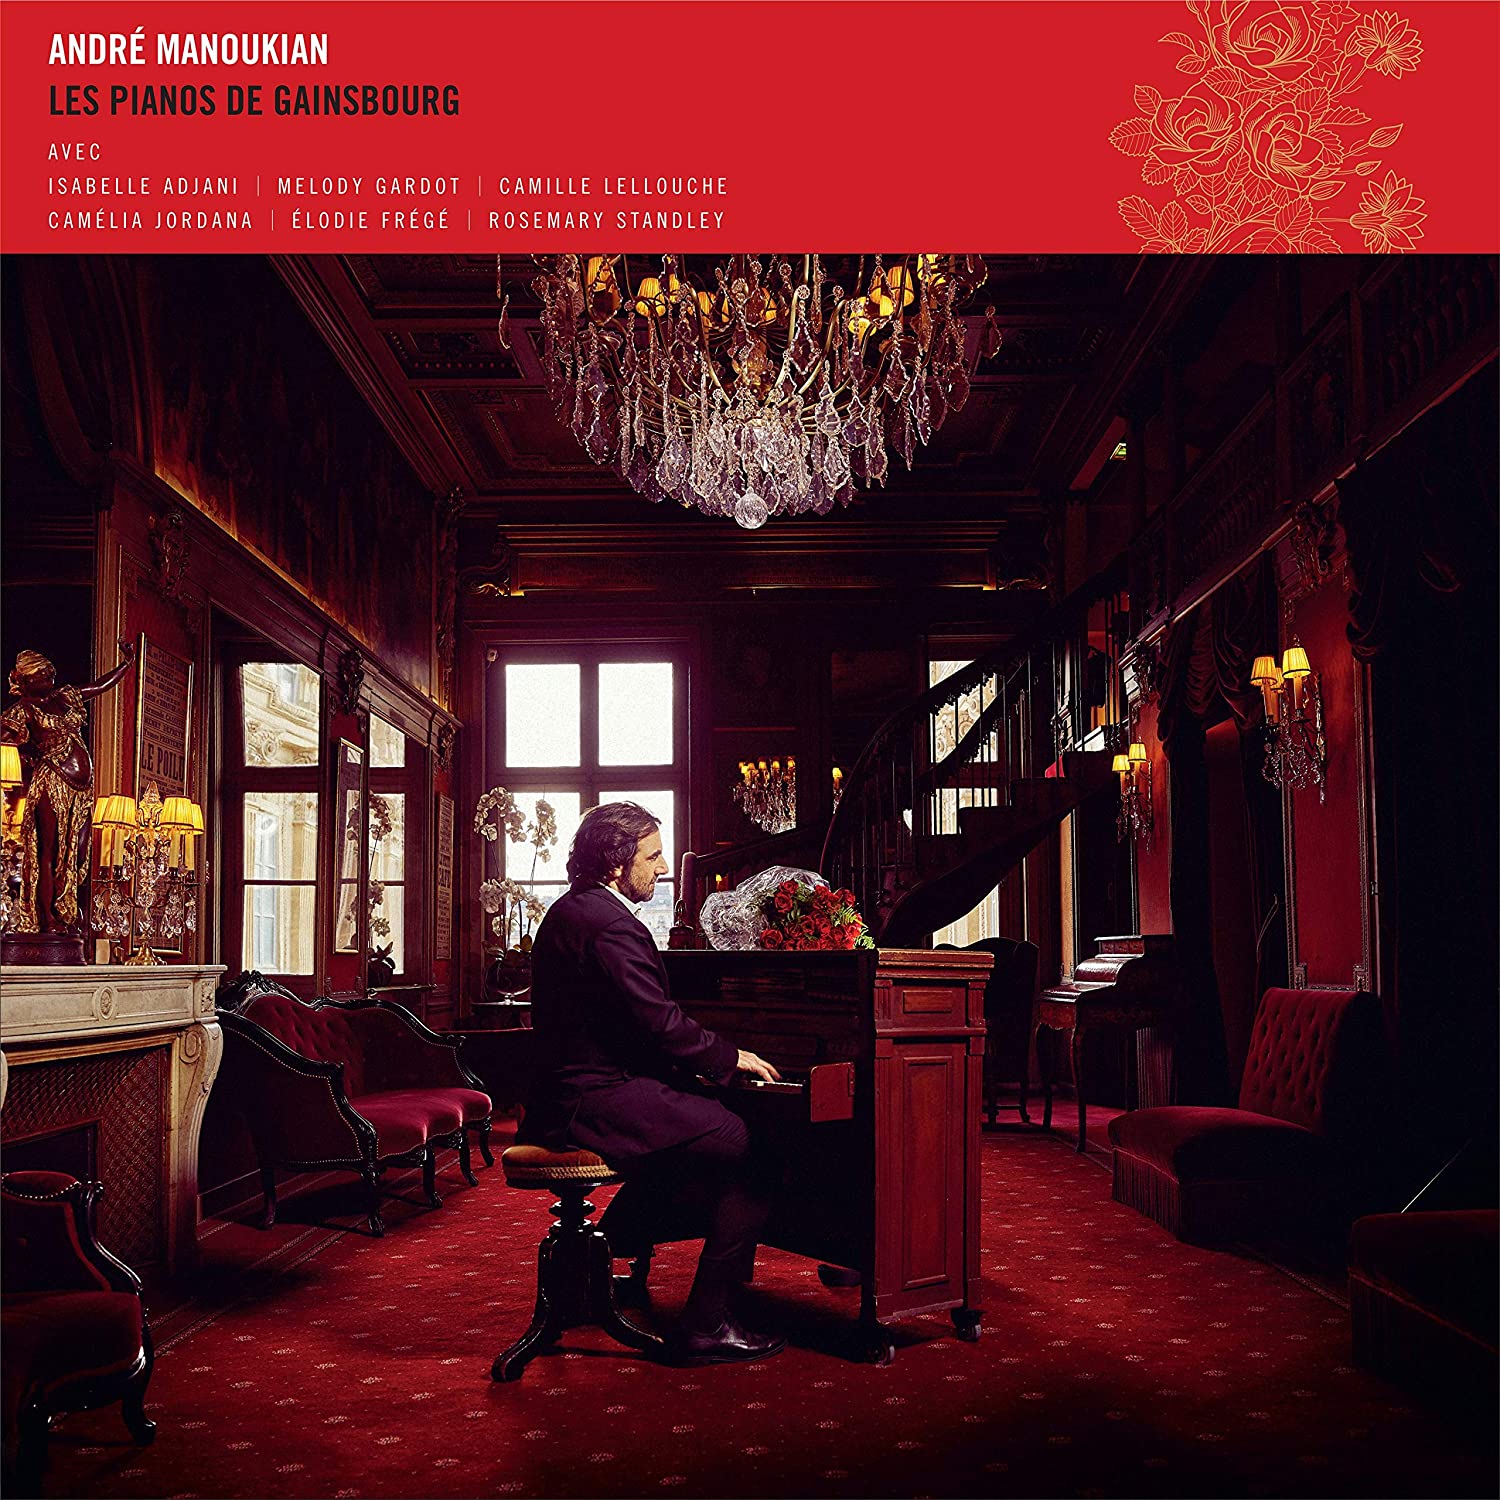 ANDRÉ MANOUKIAN - Les pianos de Gainsbourg cover 